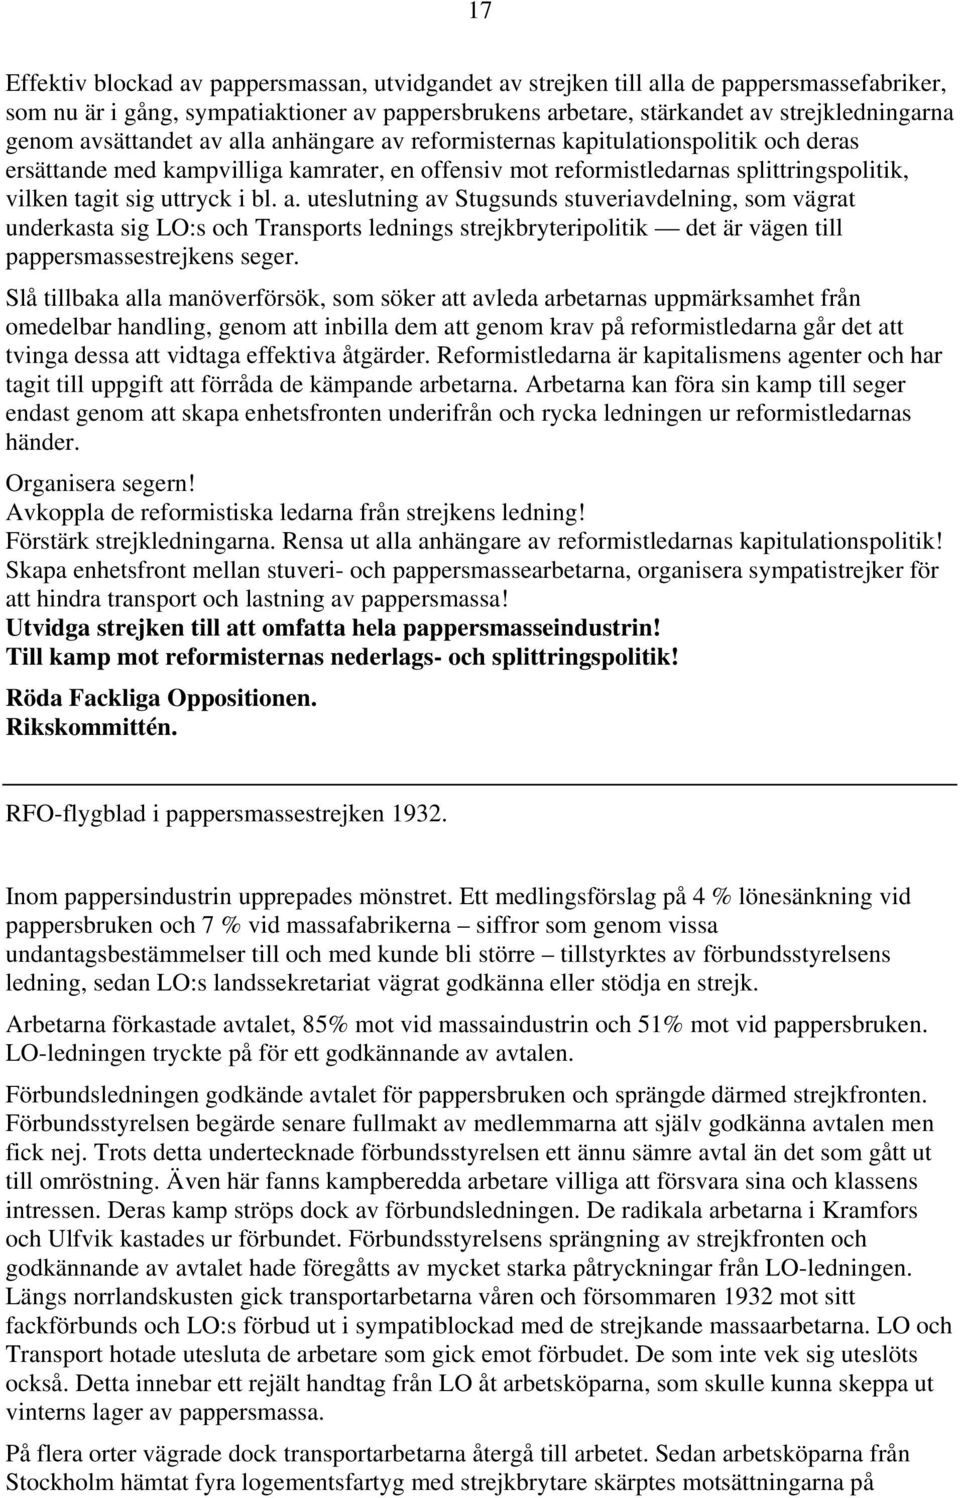 a. uteslutning av Stugsunds stuveriavdelning, som vägrat underkasta sig LO:s och Transports lednings strejkbryteripolitik det är vägen till pappersmassestrejkens seger.